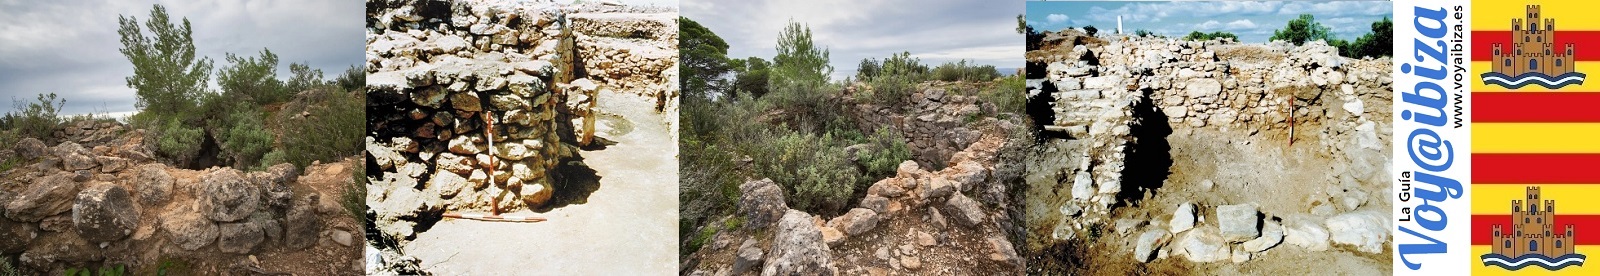 Cap des Llibrell. Yacimiento Arqueológico. Santuario. Santa Eulària des Riu, Ibiza